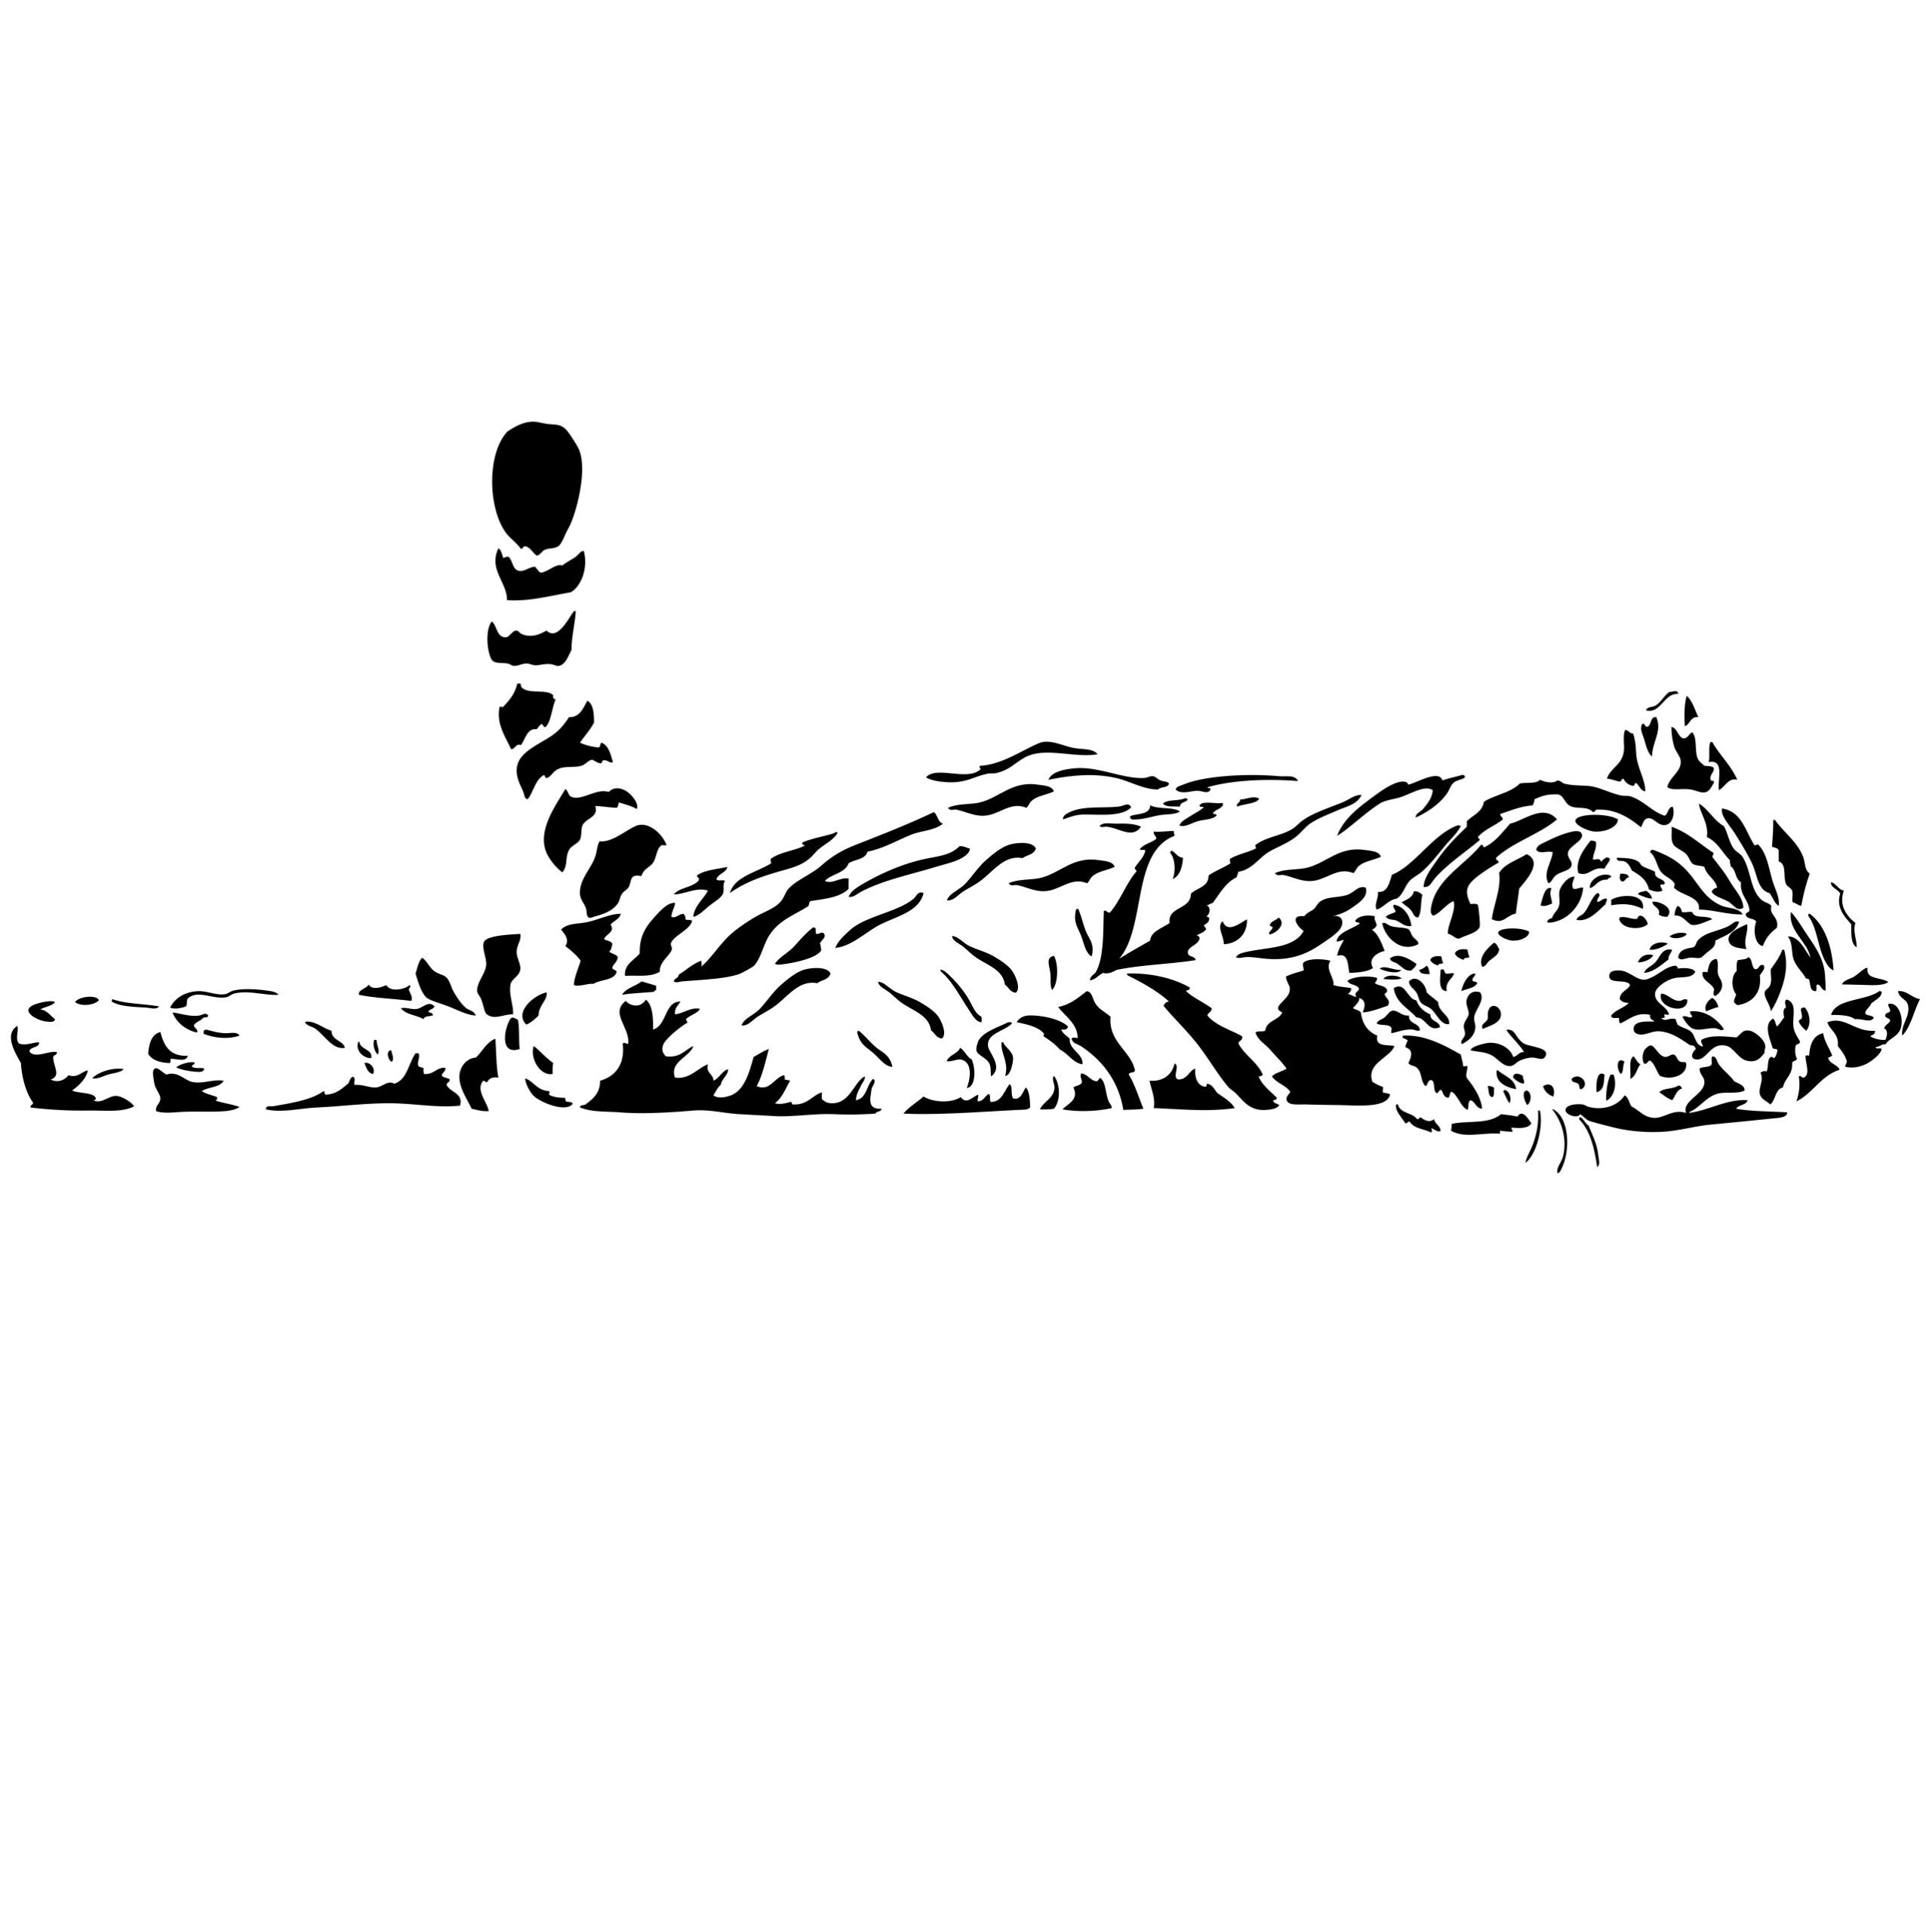 Тигр лежит